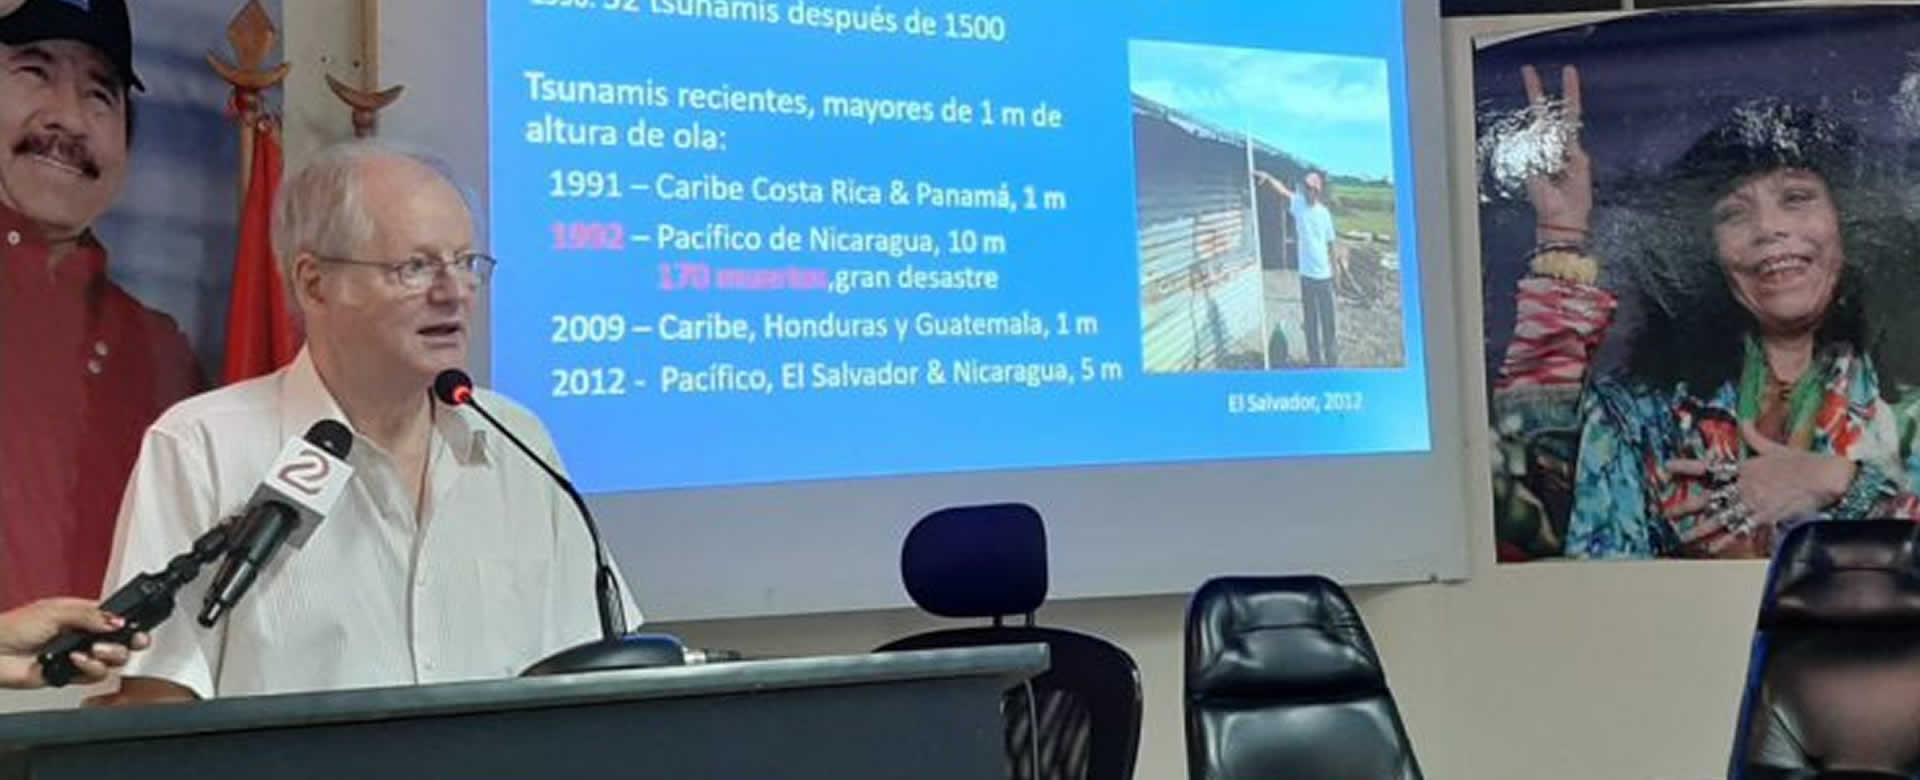 Expertos del Instituto Nicaragüense de Estudios Territoriales (INETER) participan en seminario sobre tsunamis. Más de 2 décadas han transcurrido del tsunami que azotó la costa del pacífico de Nicaragua.